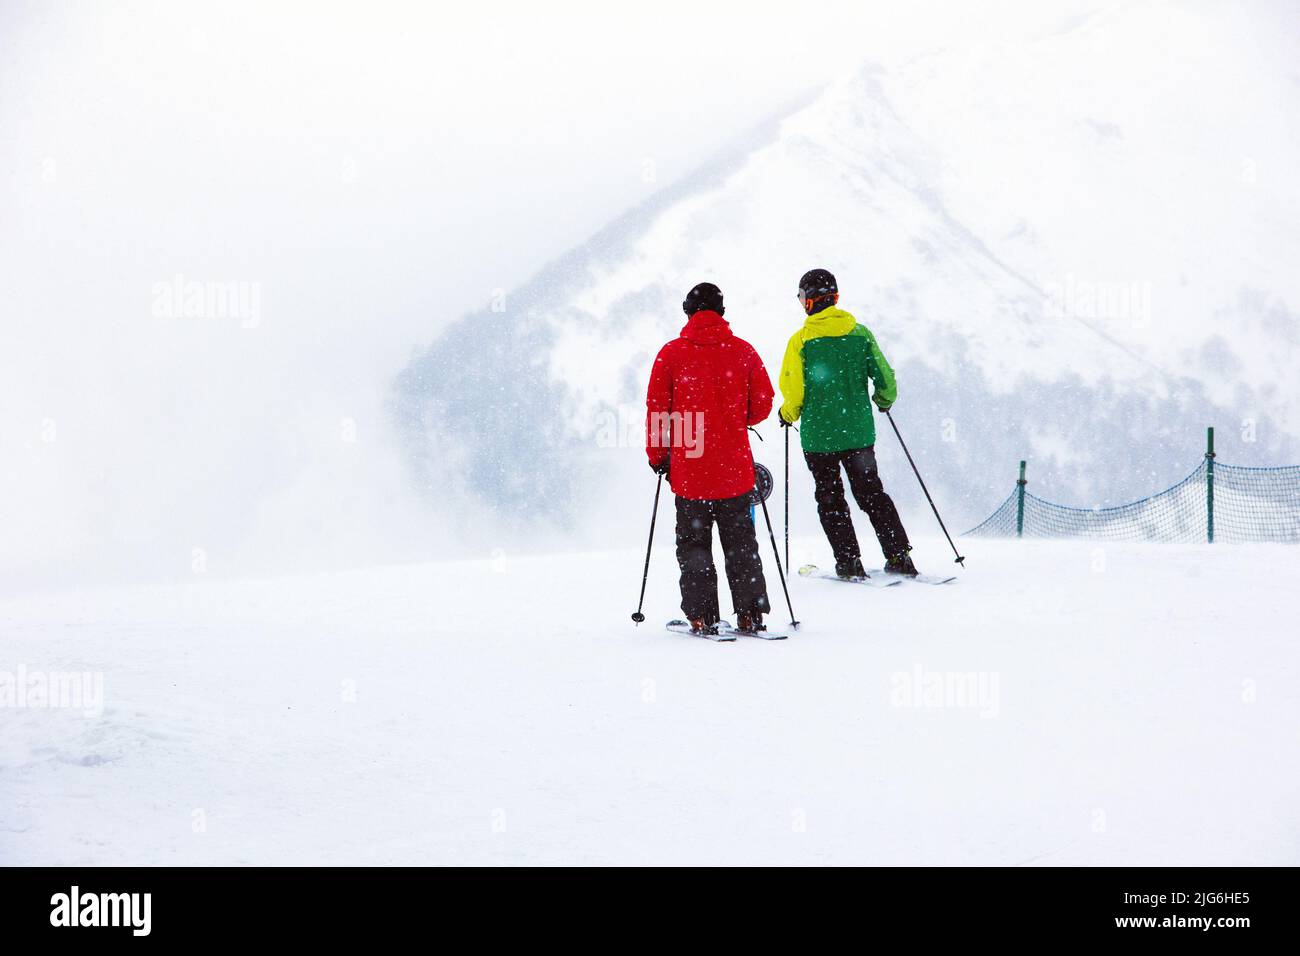 Zwei Skifahrer in roten und blauen Skianzügen, bevor sie vor dem Hintergrund von weißem Schnee und Berggipfeln in der Ferne, Bakuria, einen Berghang hinunterfahren Stockfoto